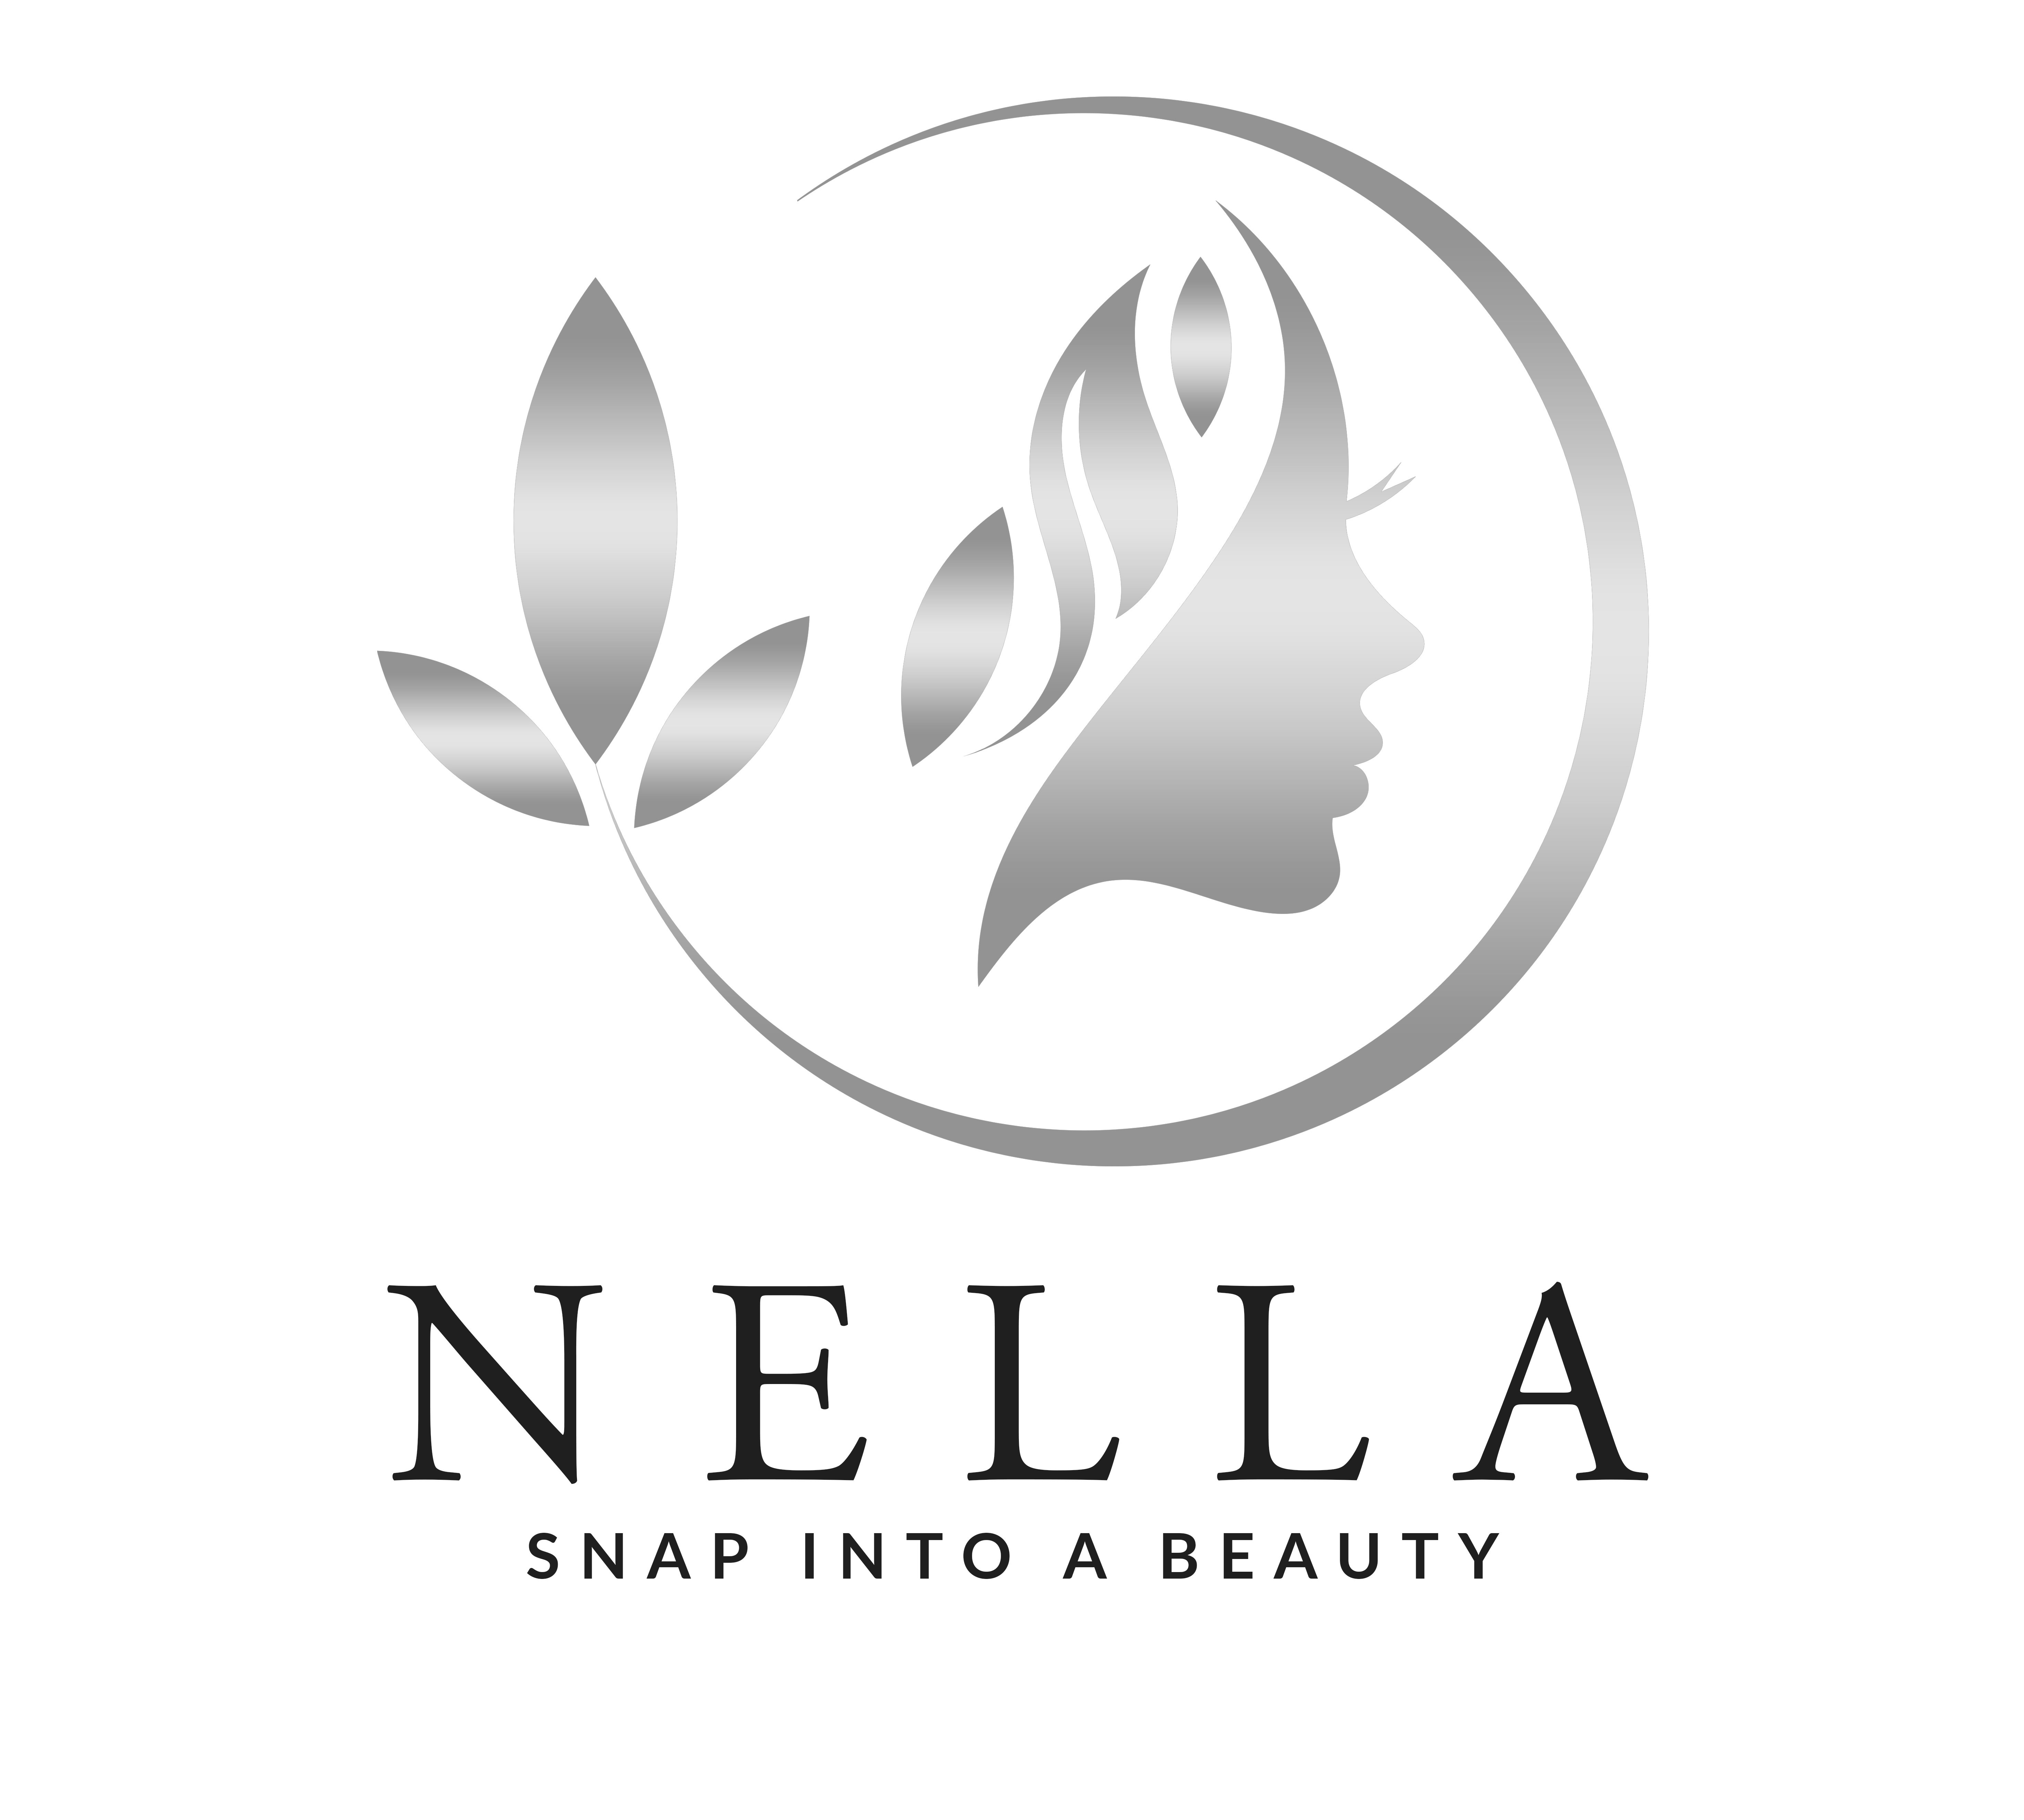 Trademark Logo NELLA